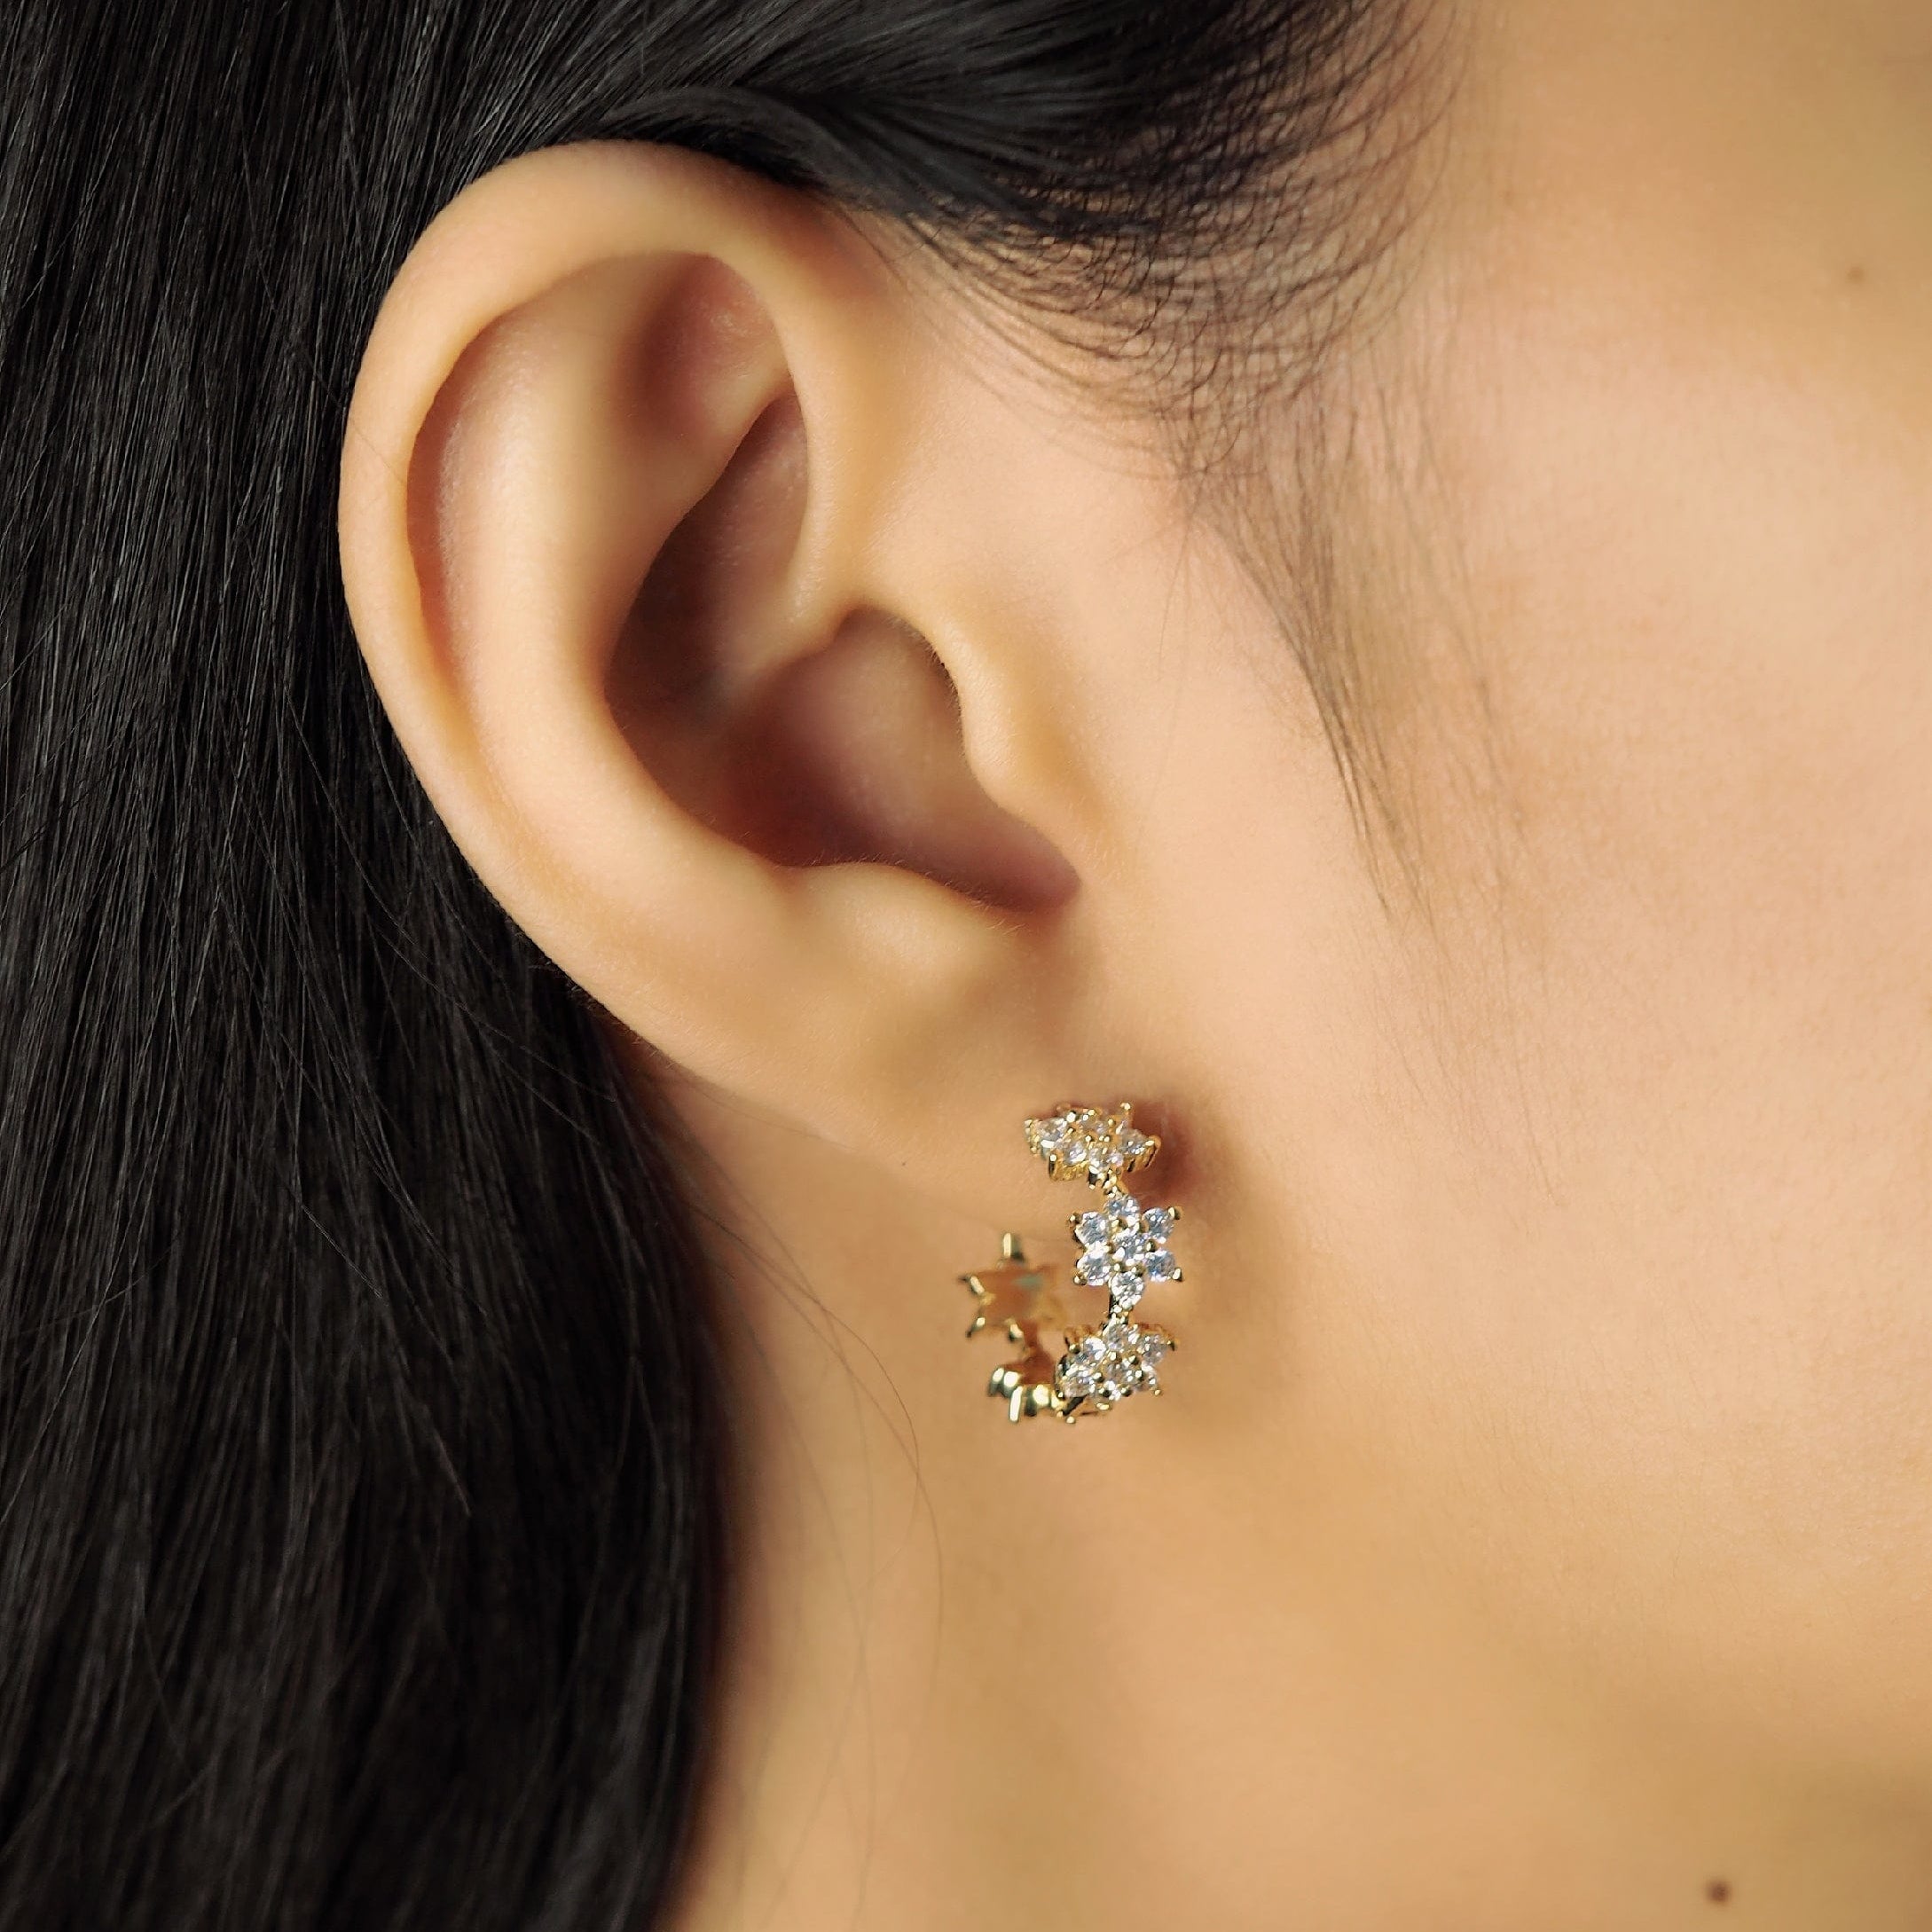 TAI JEWELRY Earrings Cz Flower Power Huggie